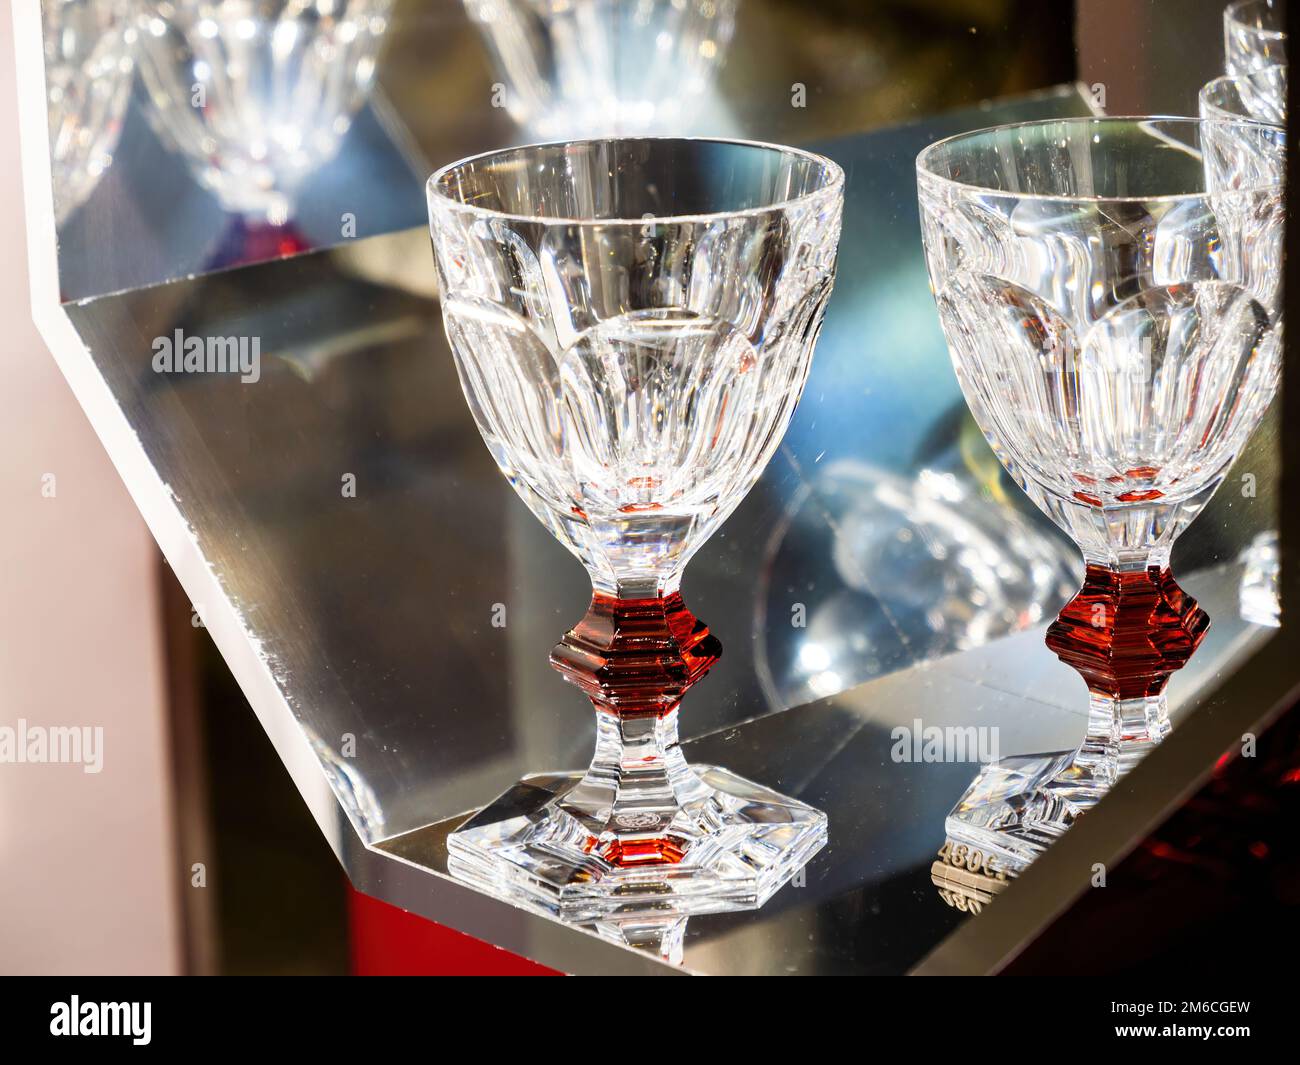 Daum - Royale De Champagne Louis Vuitton Large Wine Glass